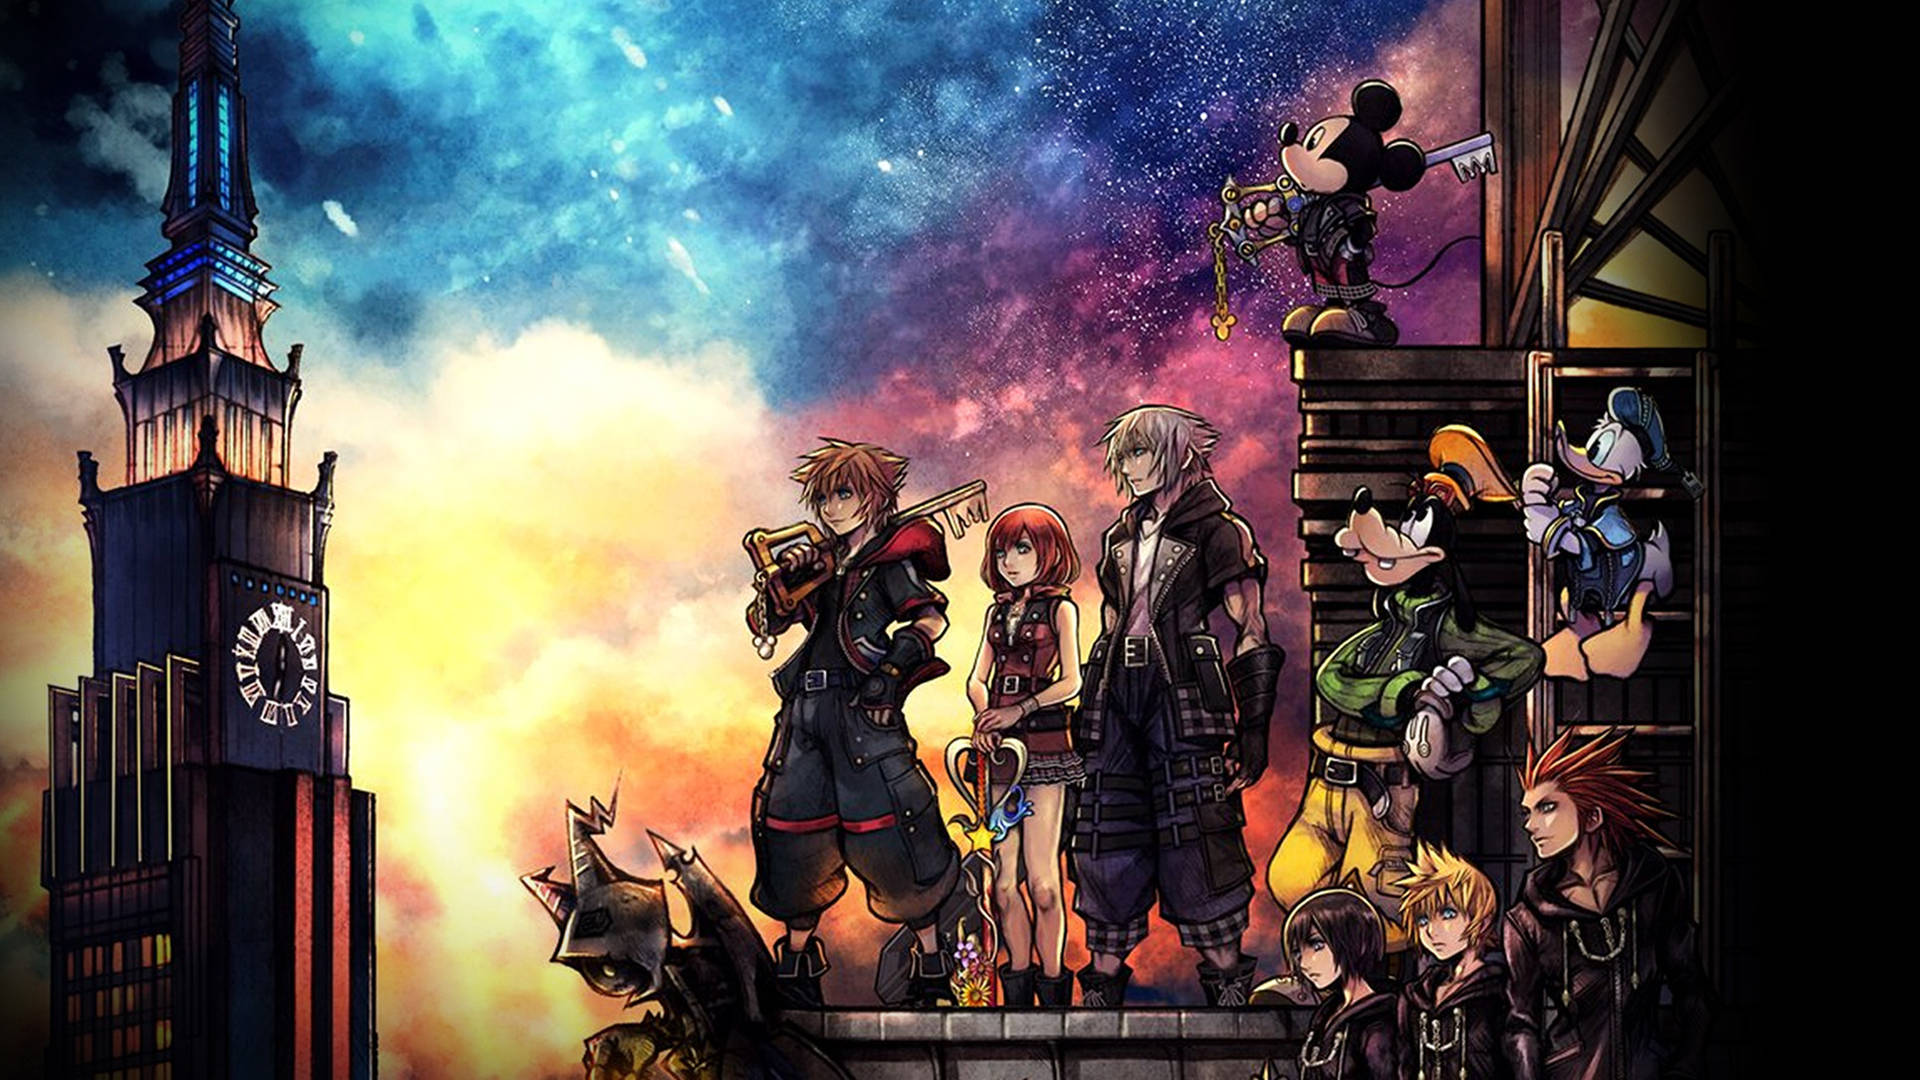 Plano De Fundo De Kingdom Hearts 3